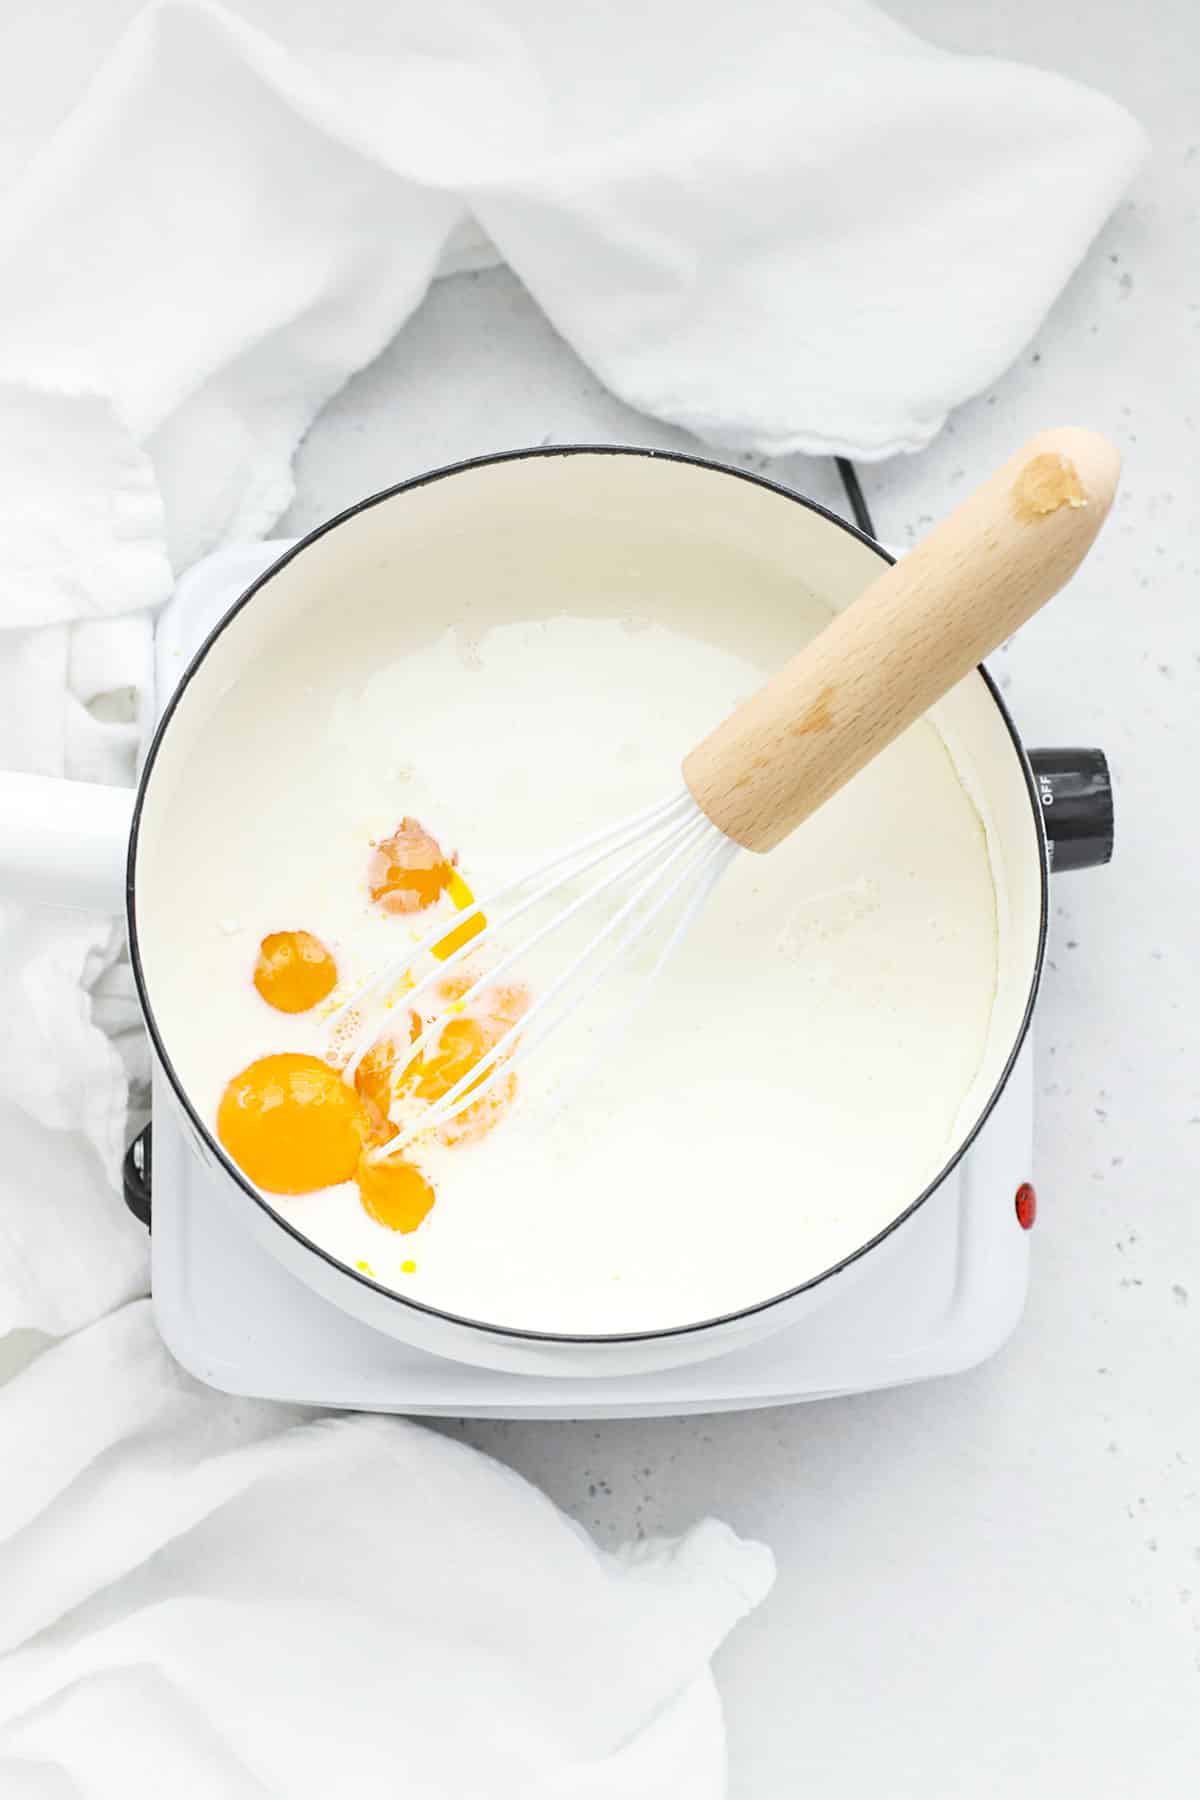 Adding milk, egg yolks, and cream to cornstarch, sugar, and salt to make banana pudding